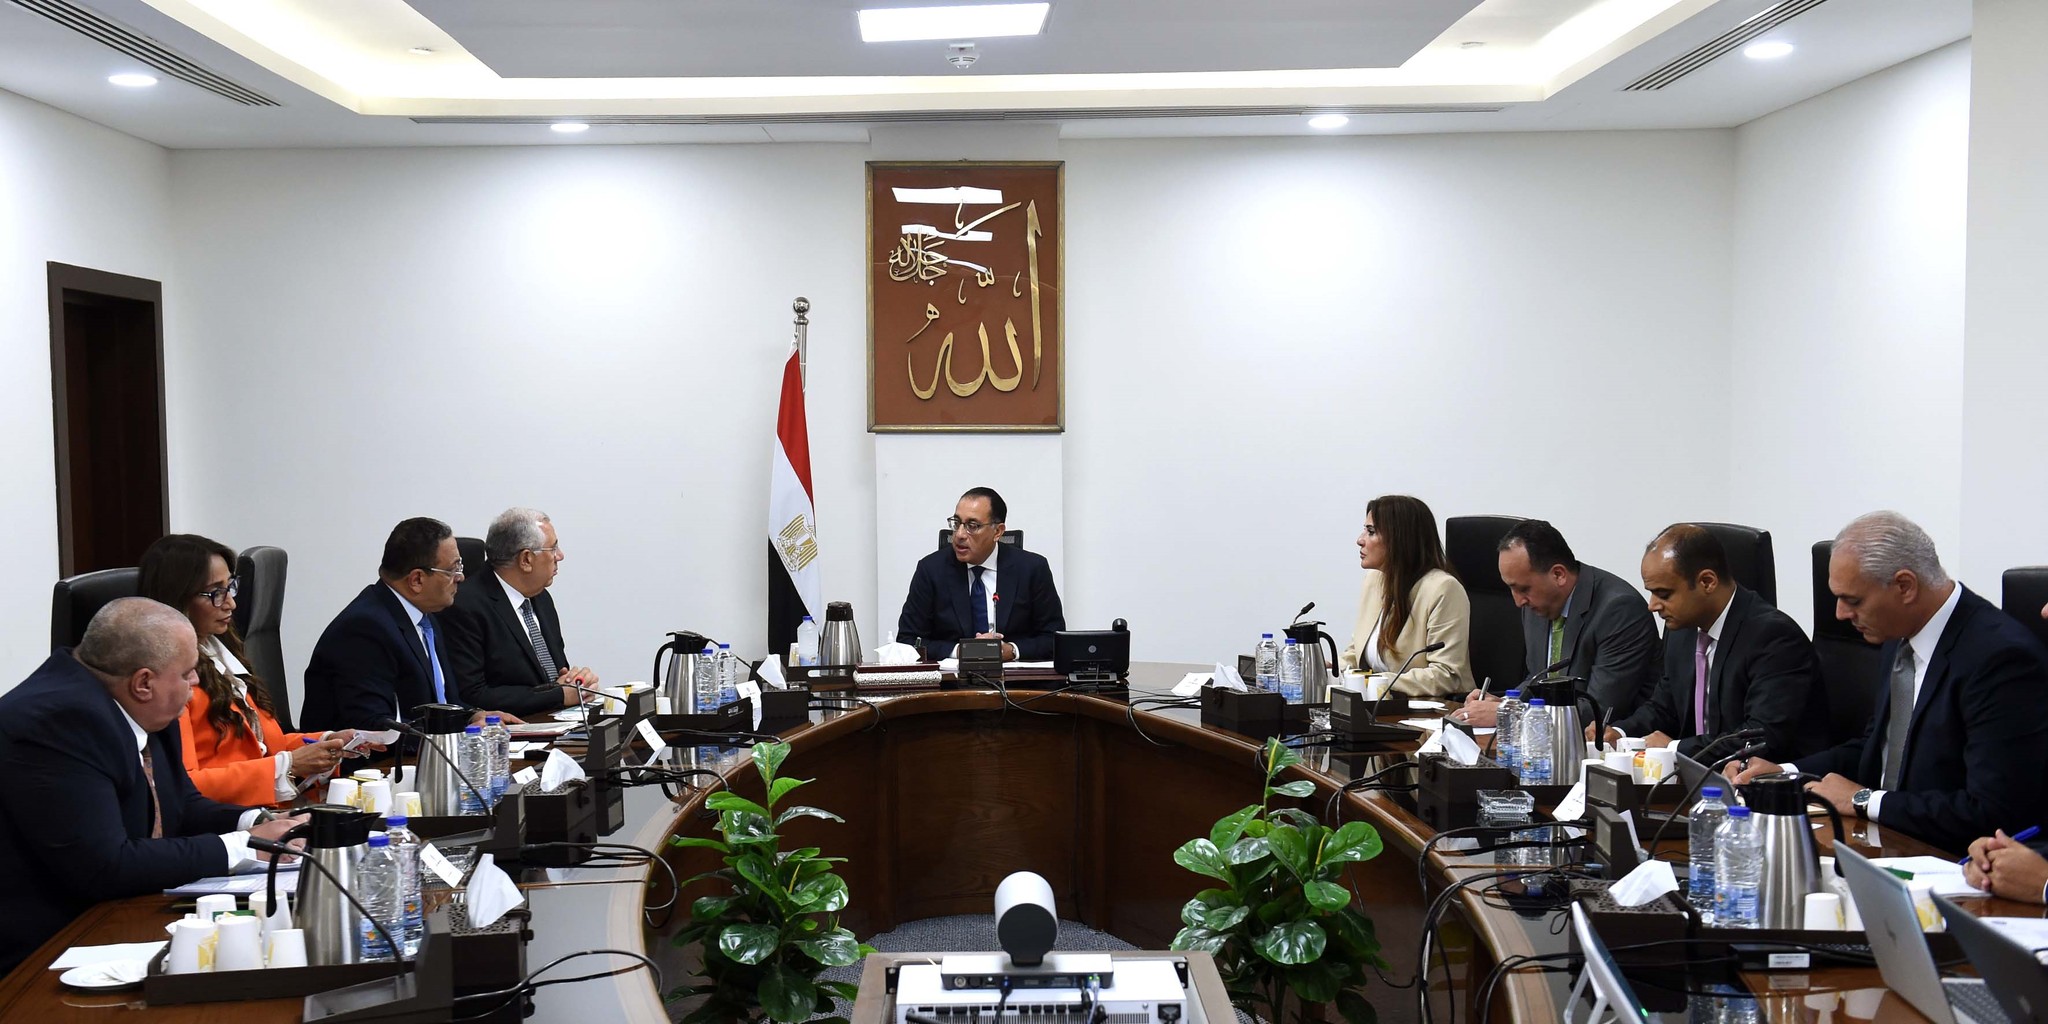 تفعيل التعاون الثنائي بين مصر وإيطاليا في مجال الزراعة والتصنيع الزراعي